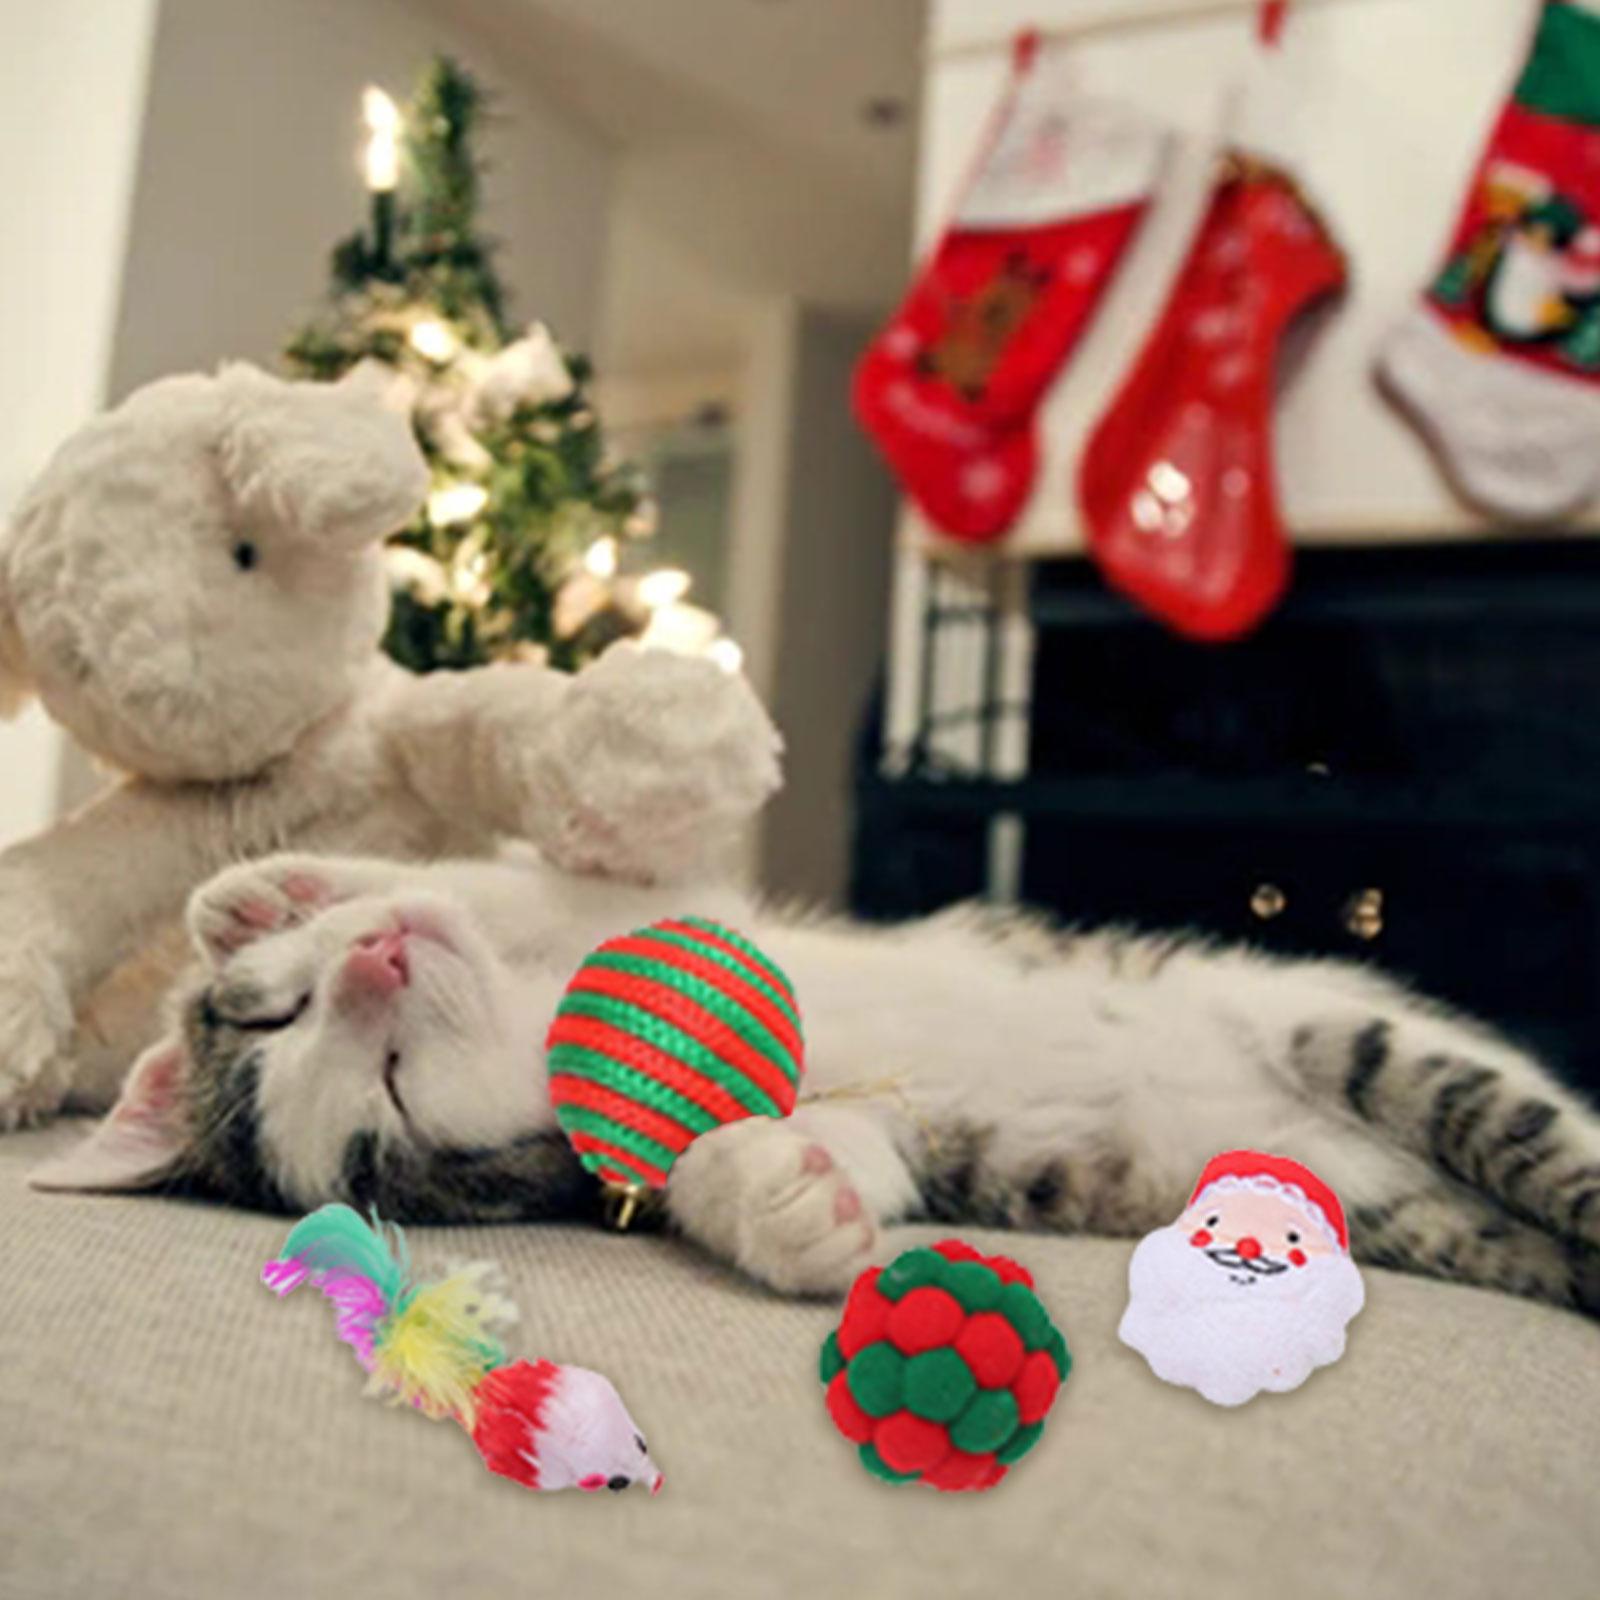 Bộ đồ chơi mèo Giáng sinh là món quà hoàn hảo cho thú cưng của bạn vào dịp lễ Giáng sinh. Với những món đồ chơi đáng yêu và bắt mắt, mèo của bạn sẽ có một mùa lễ yêu thú vị hơn bao giờ hết. Hãy xem ảnh để biết thêm chi tiết về bộ đồ chơi mèo Giáng sinh này.